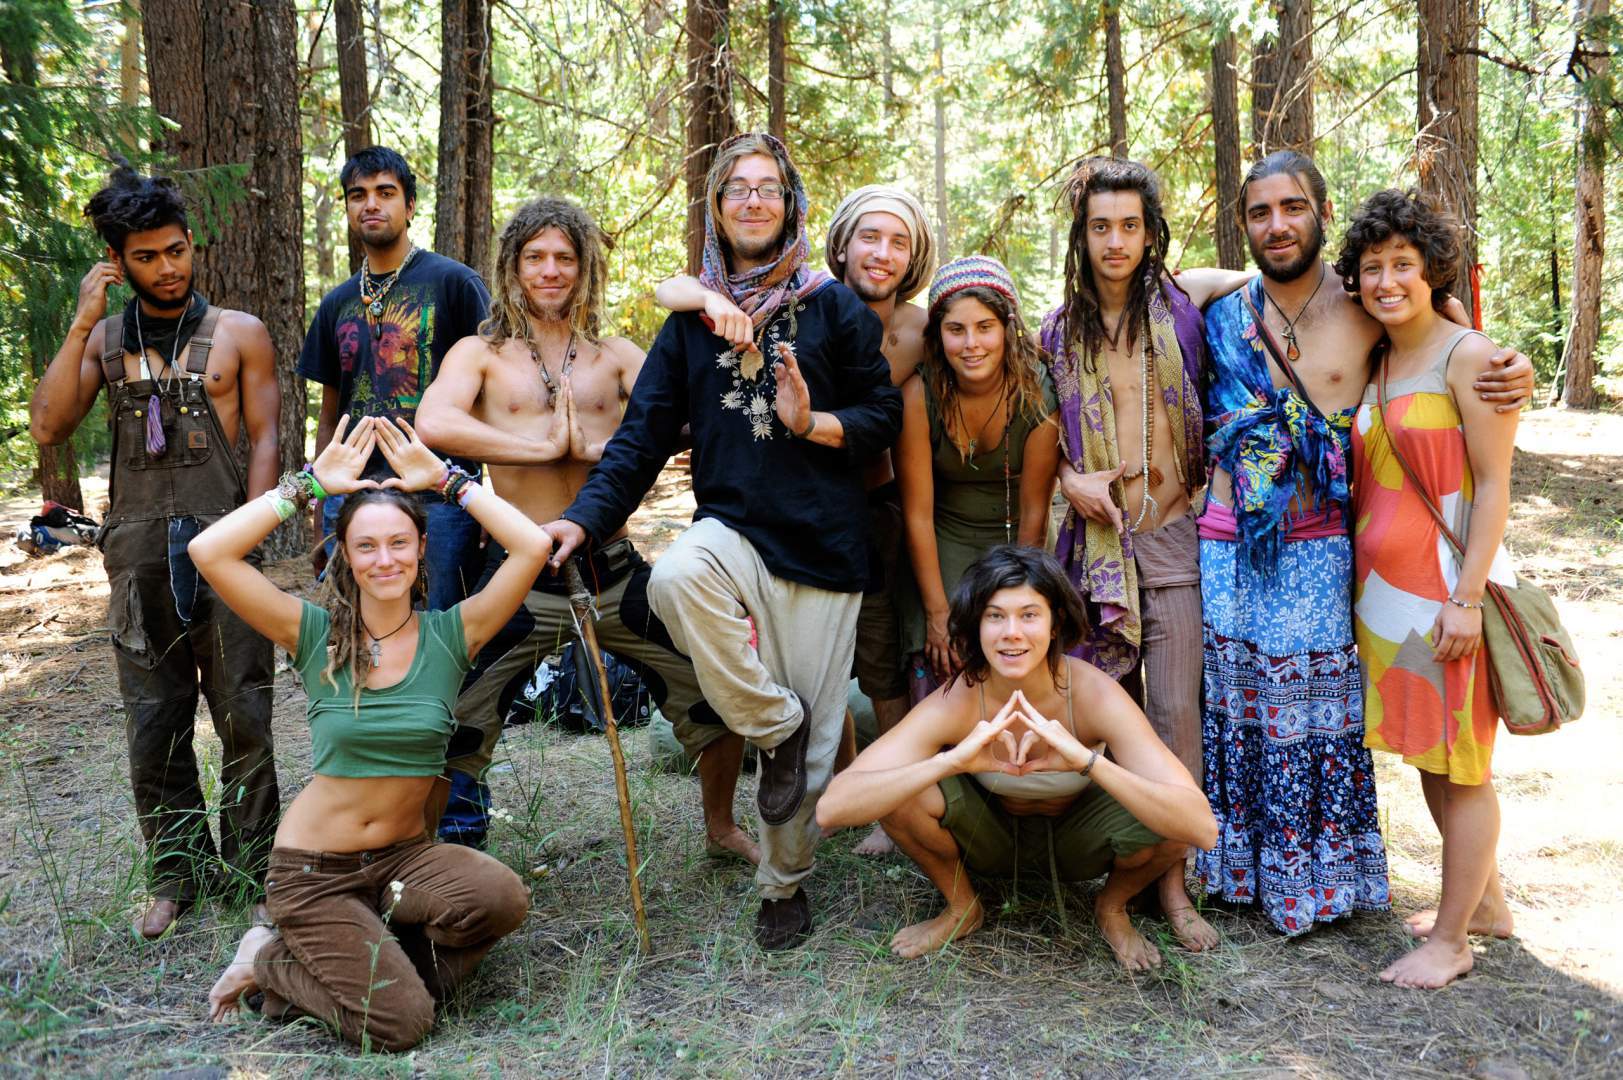 Outdoor hippie